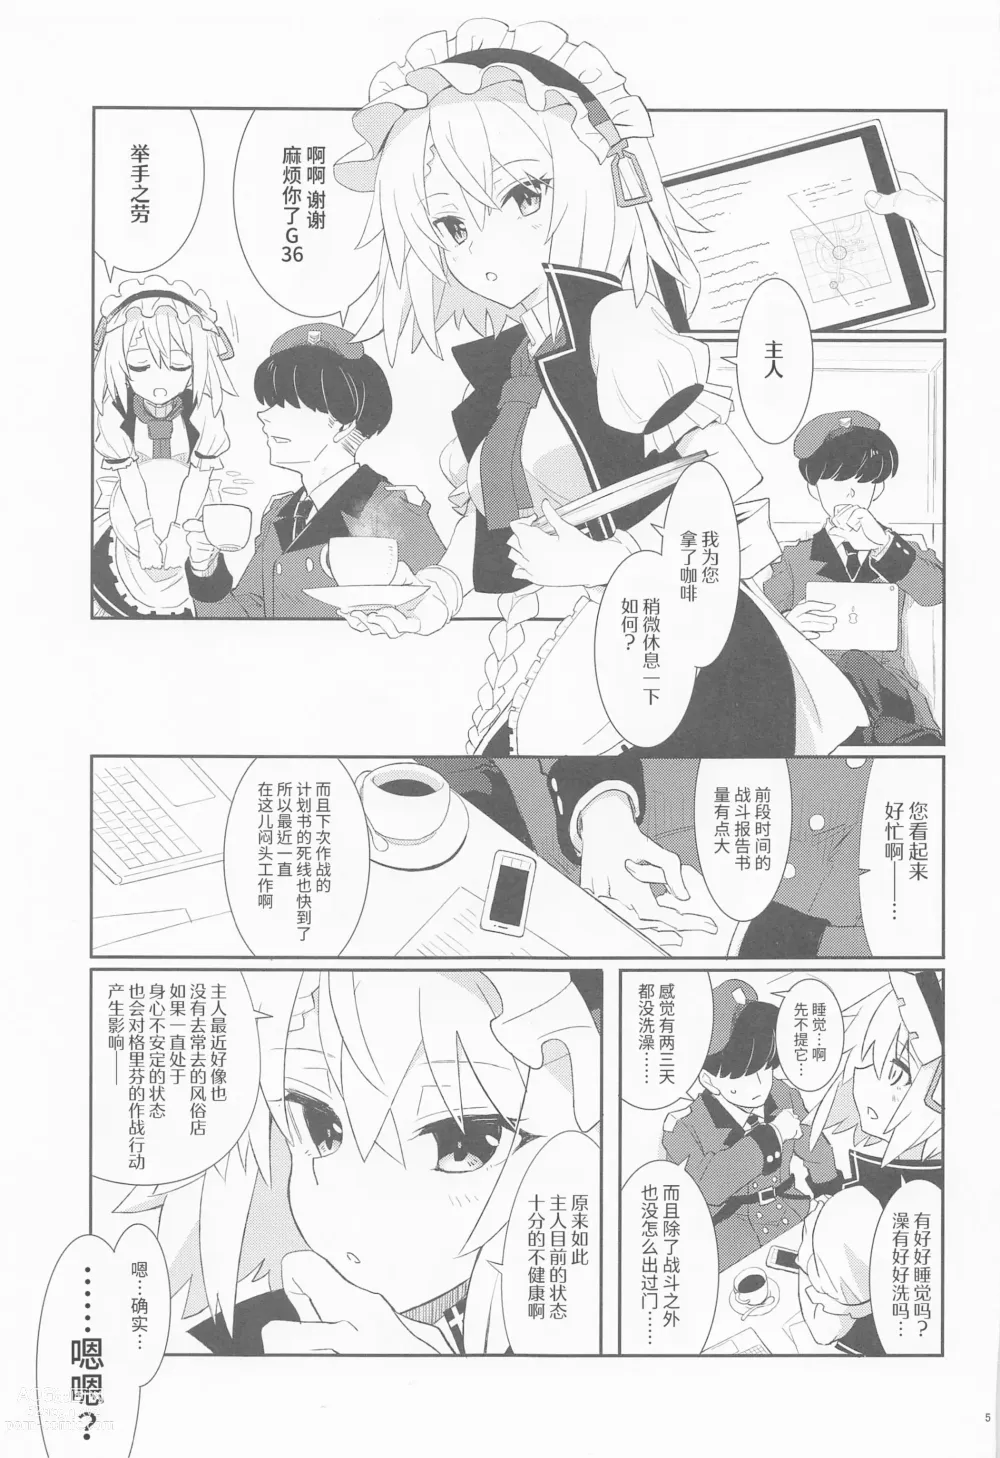 Page 3 of doujinshi 请让我服侍您、主人。